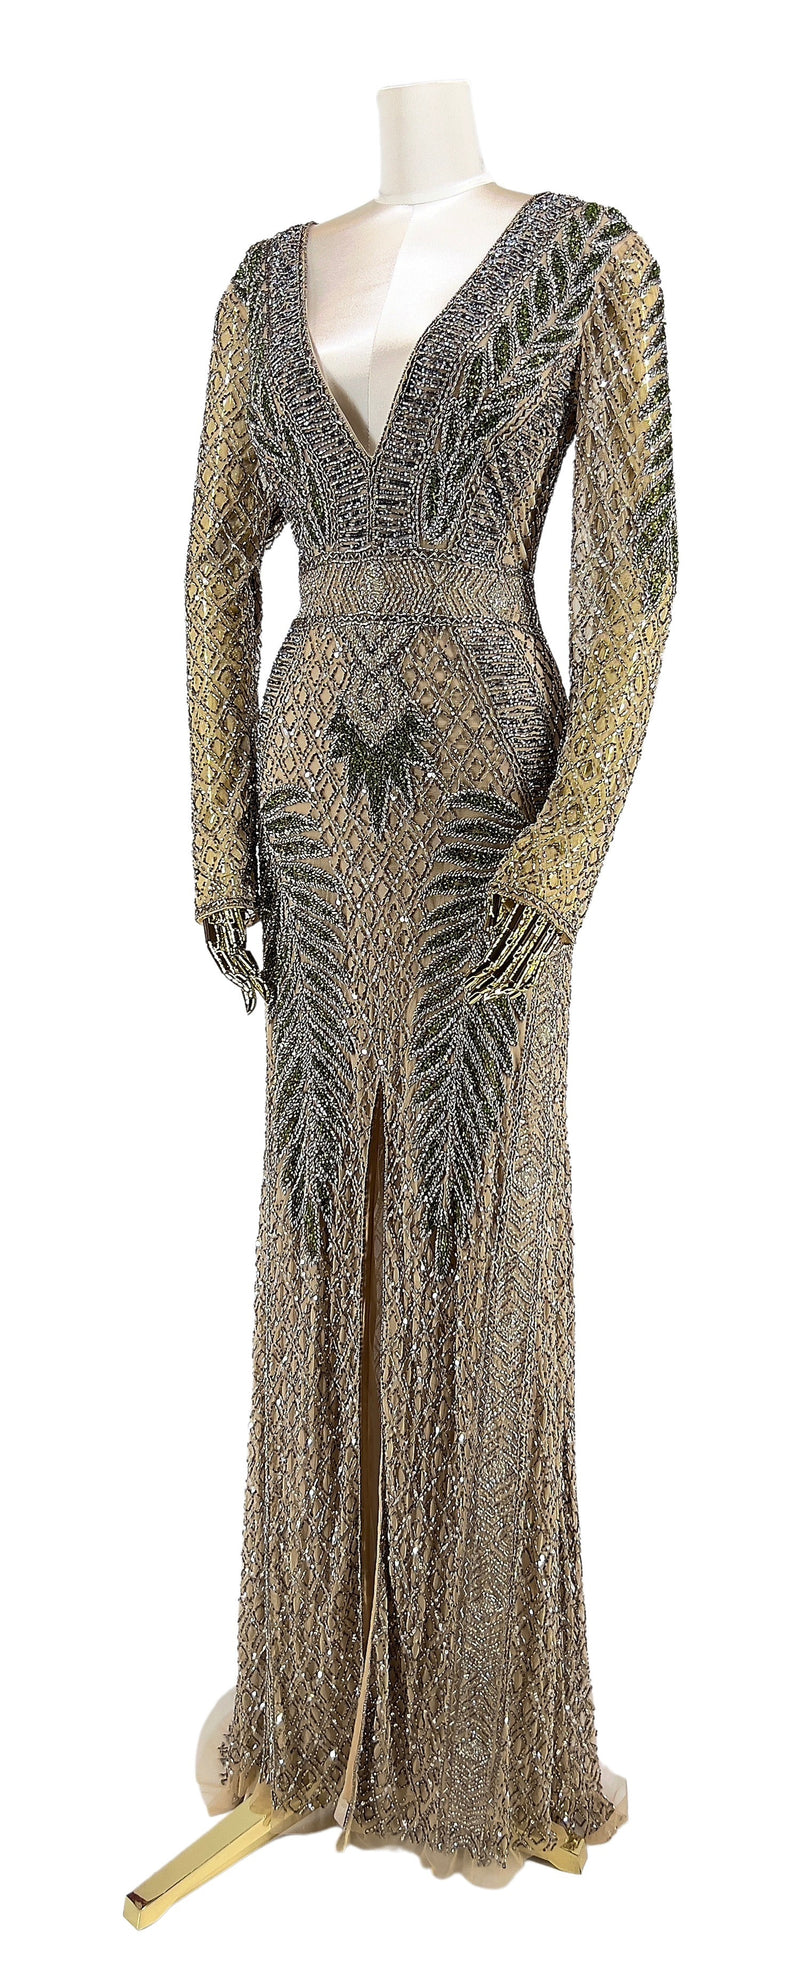 Vinklet visning af Guldglans Gallakjole, fremviser kjolens flerdimensionelle design og eksklusive håndværk, afspejler ægte glamour og stil.